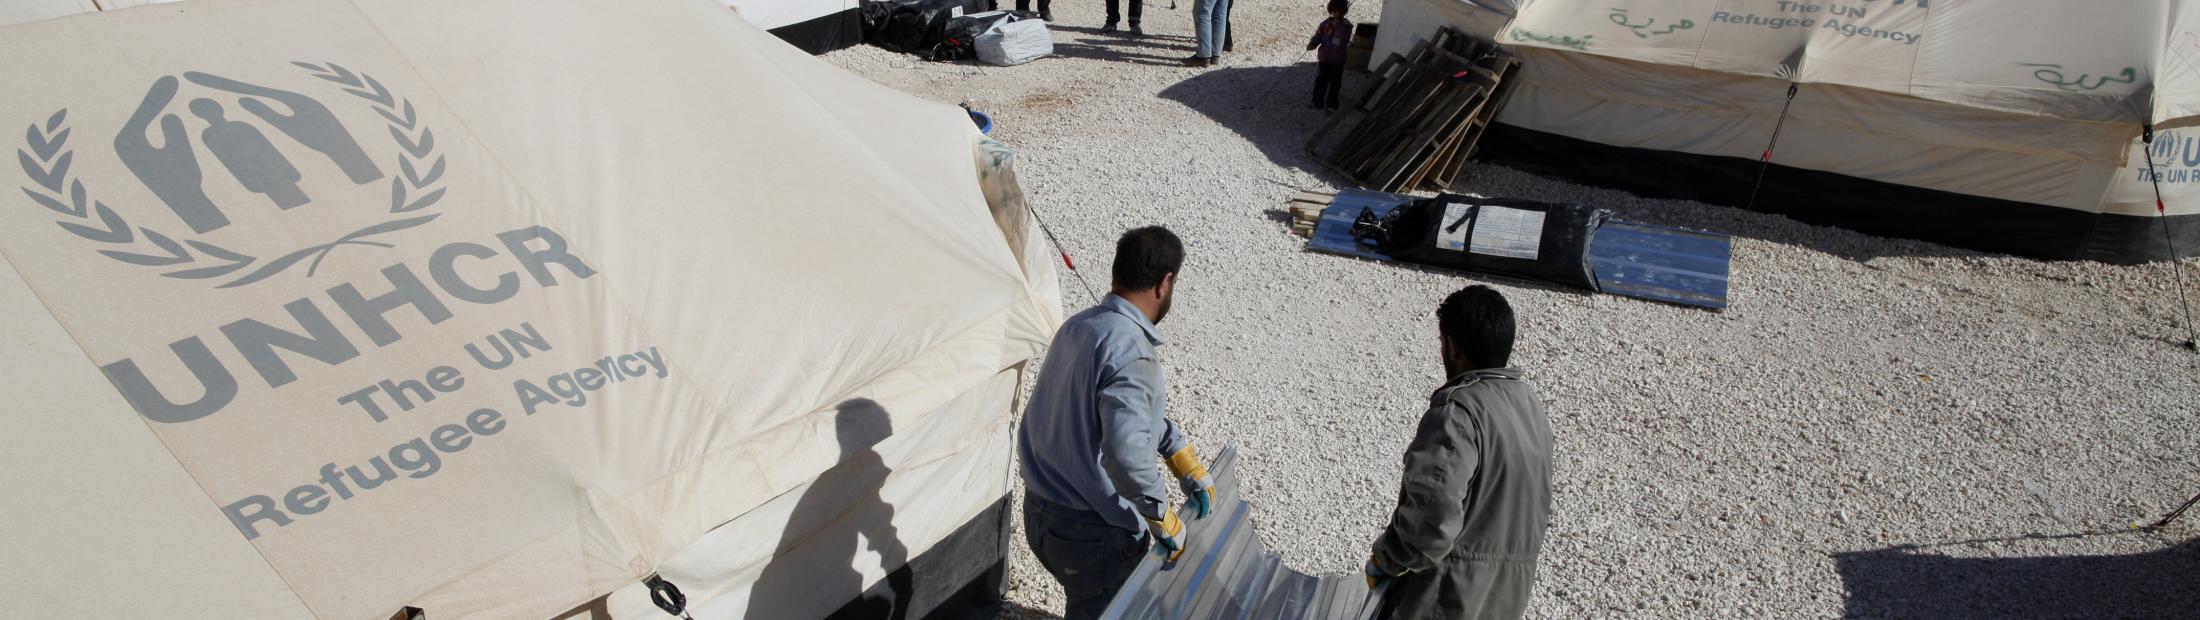 ACNUR abrirá un nuevo campo de refugiados en Jordania para asistir a los miles de refugiados sirios que llegan cada día 